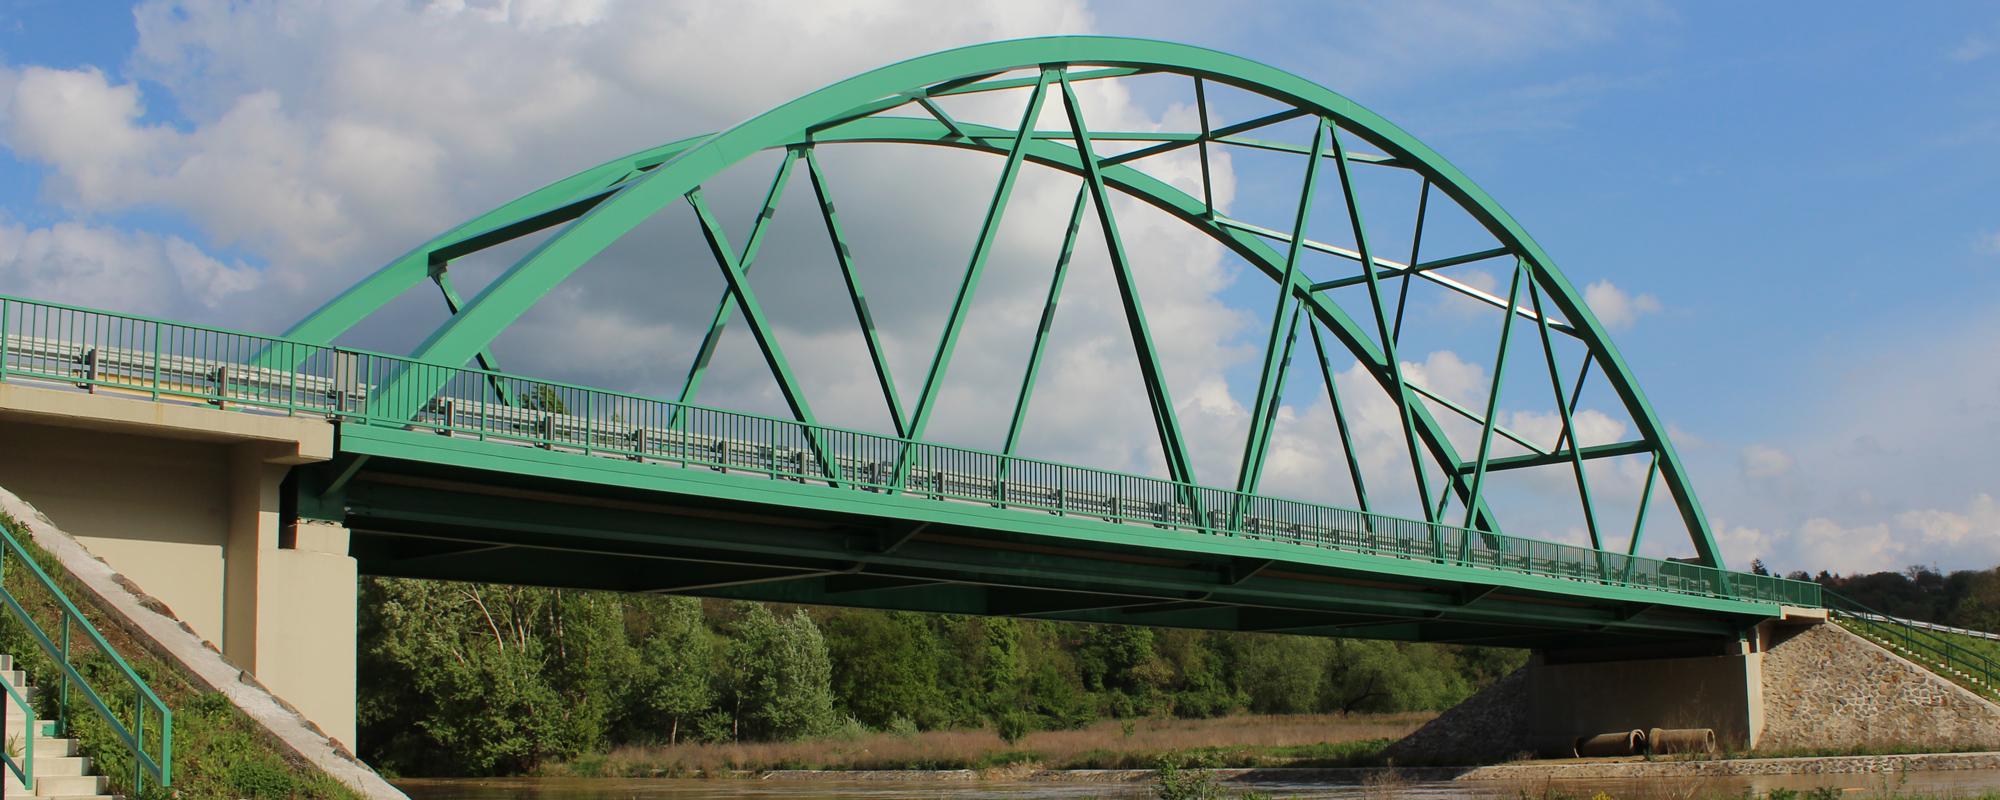 Abaújvár-Kechnec nemzetközi Hernád híd kivitelezés műszaki ellenőrzése